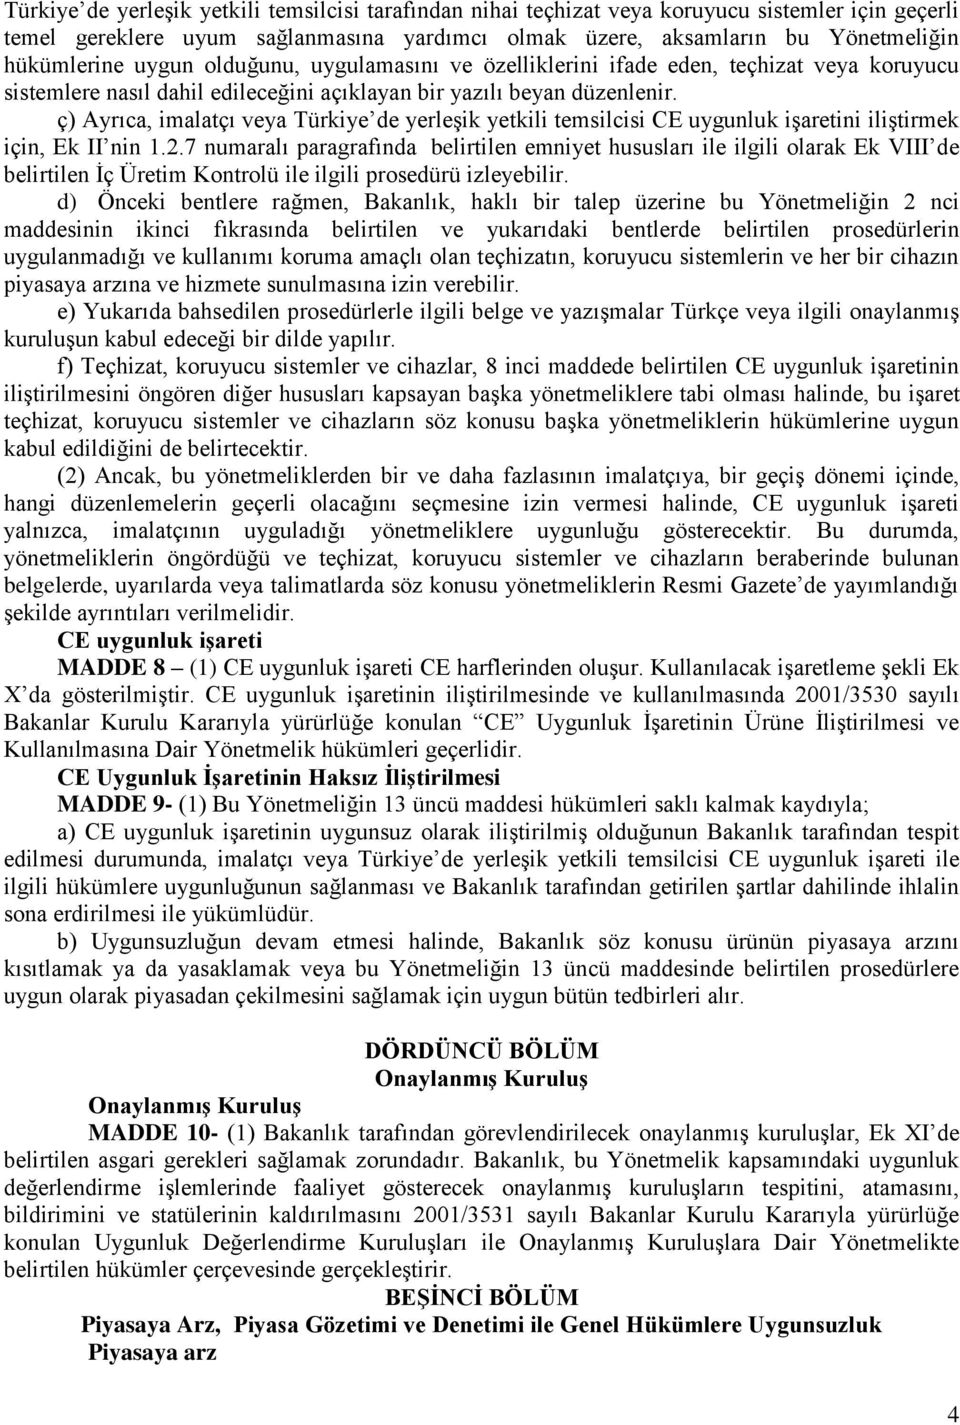 ç) Ayrıca, imalatçı veya Türkiye de yerleşik yetkili temsilcisi CE uygunluk işaretini iliştirmek için, Ek II nin 1.2.